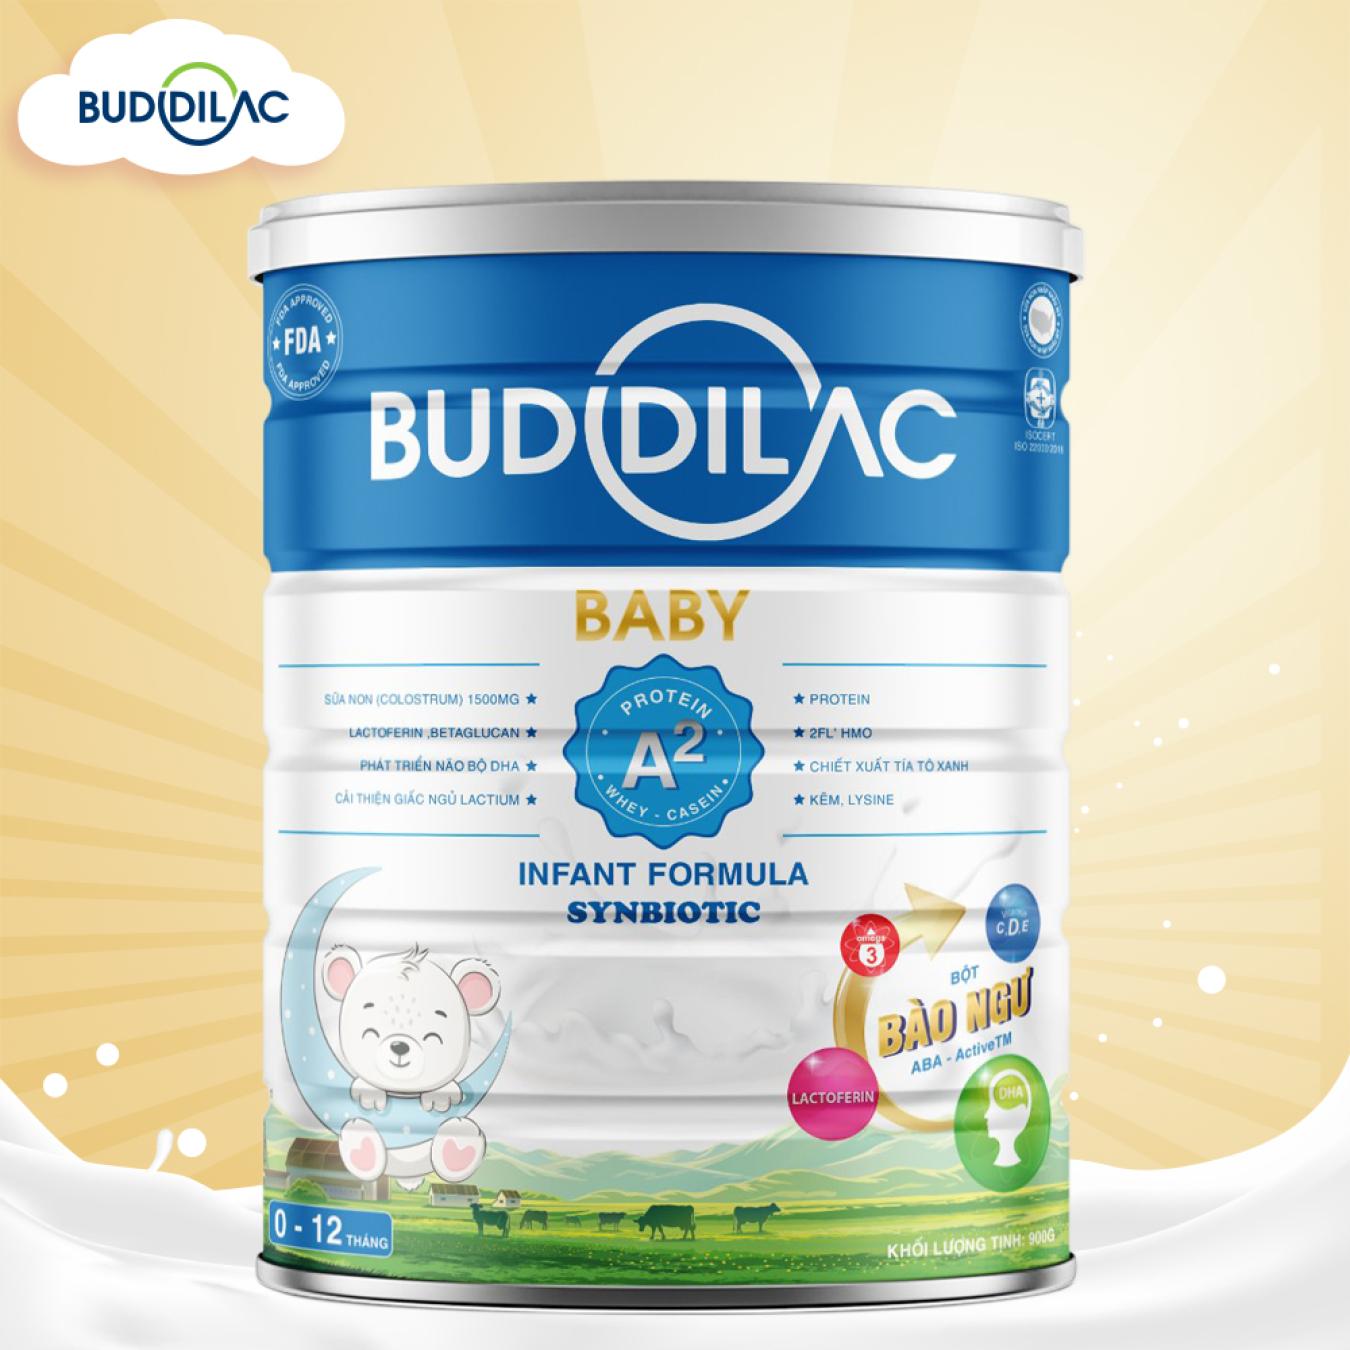 Sữa Buddilac Baby - Sữa tăng cân, tăng sức đề kháng cho bé